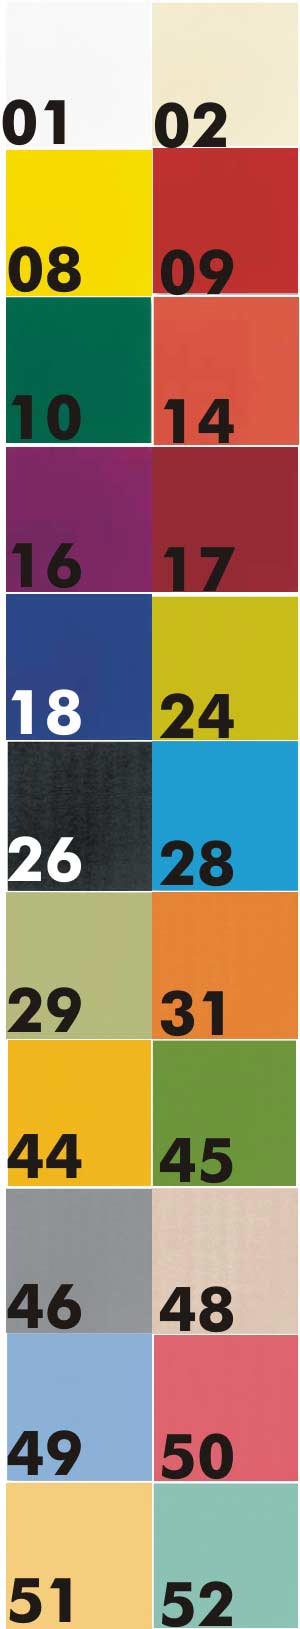 Salg af servietter, duni, 3-lags, 33x33cm, 125 stk - farver  Aamand Udlejningscenter.